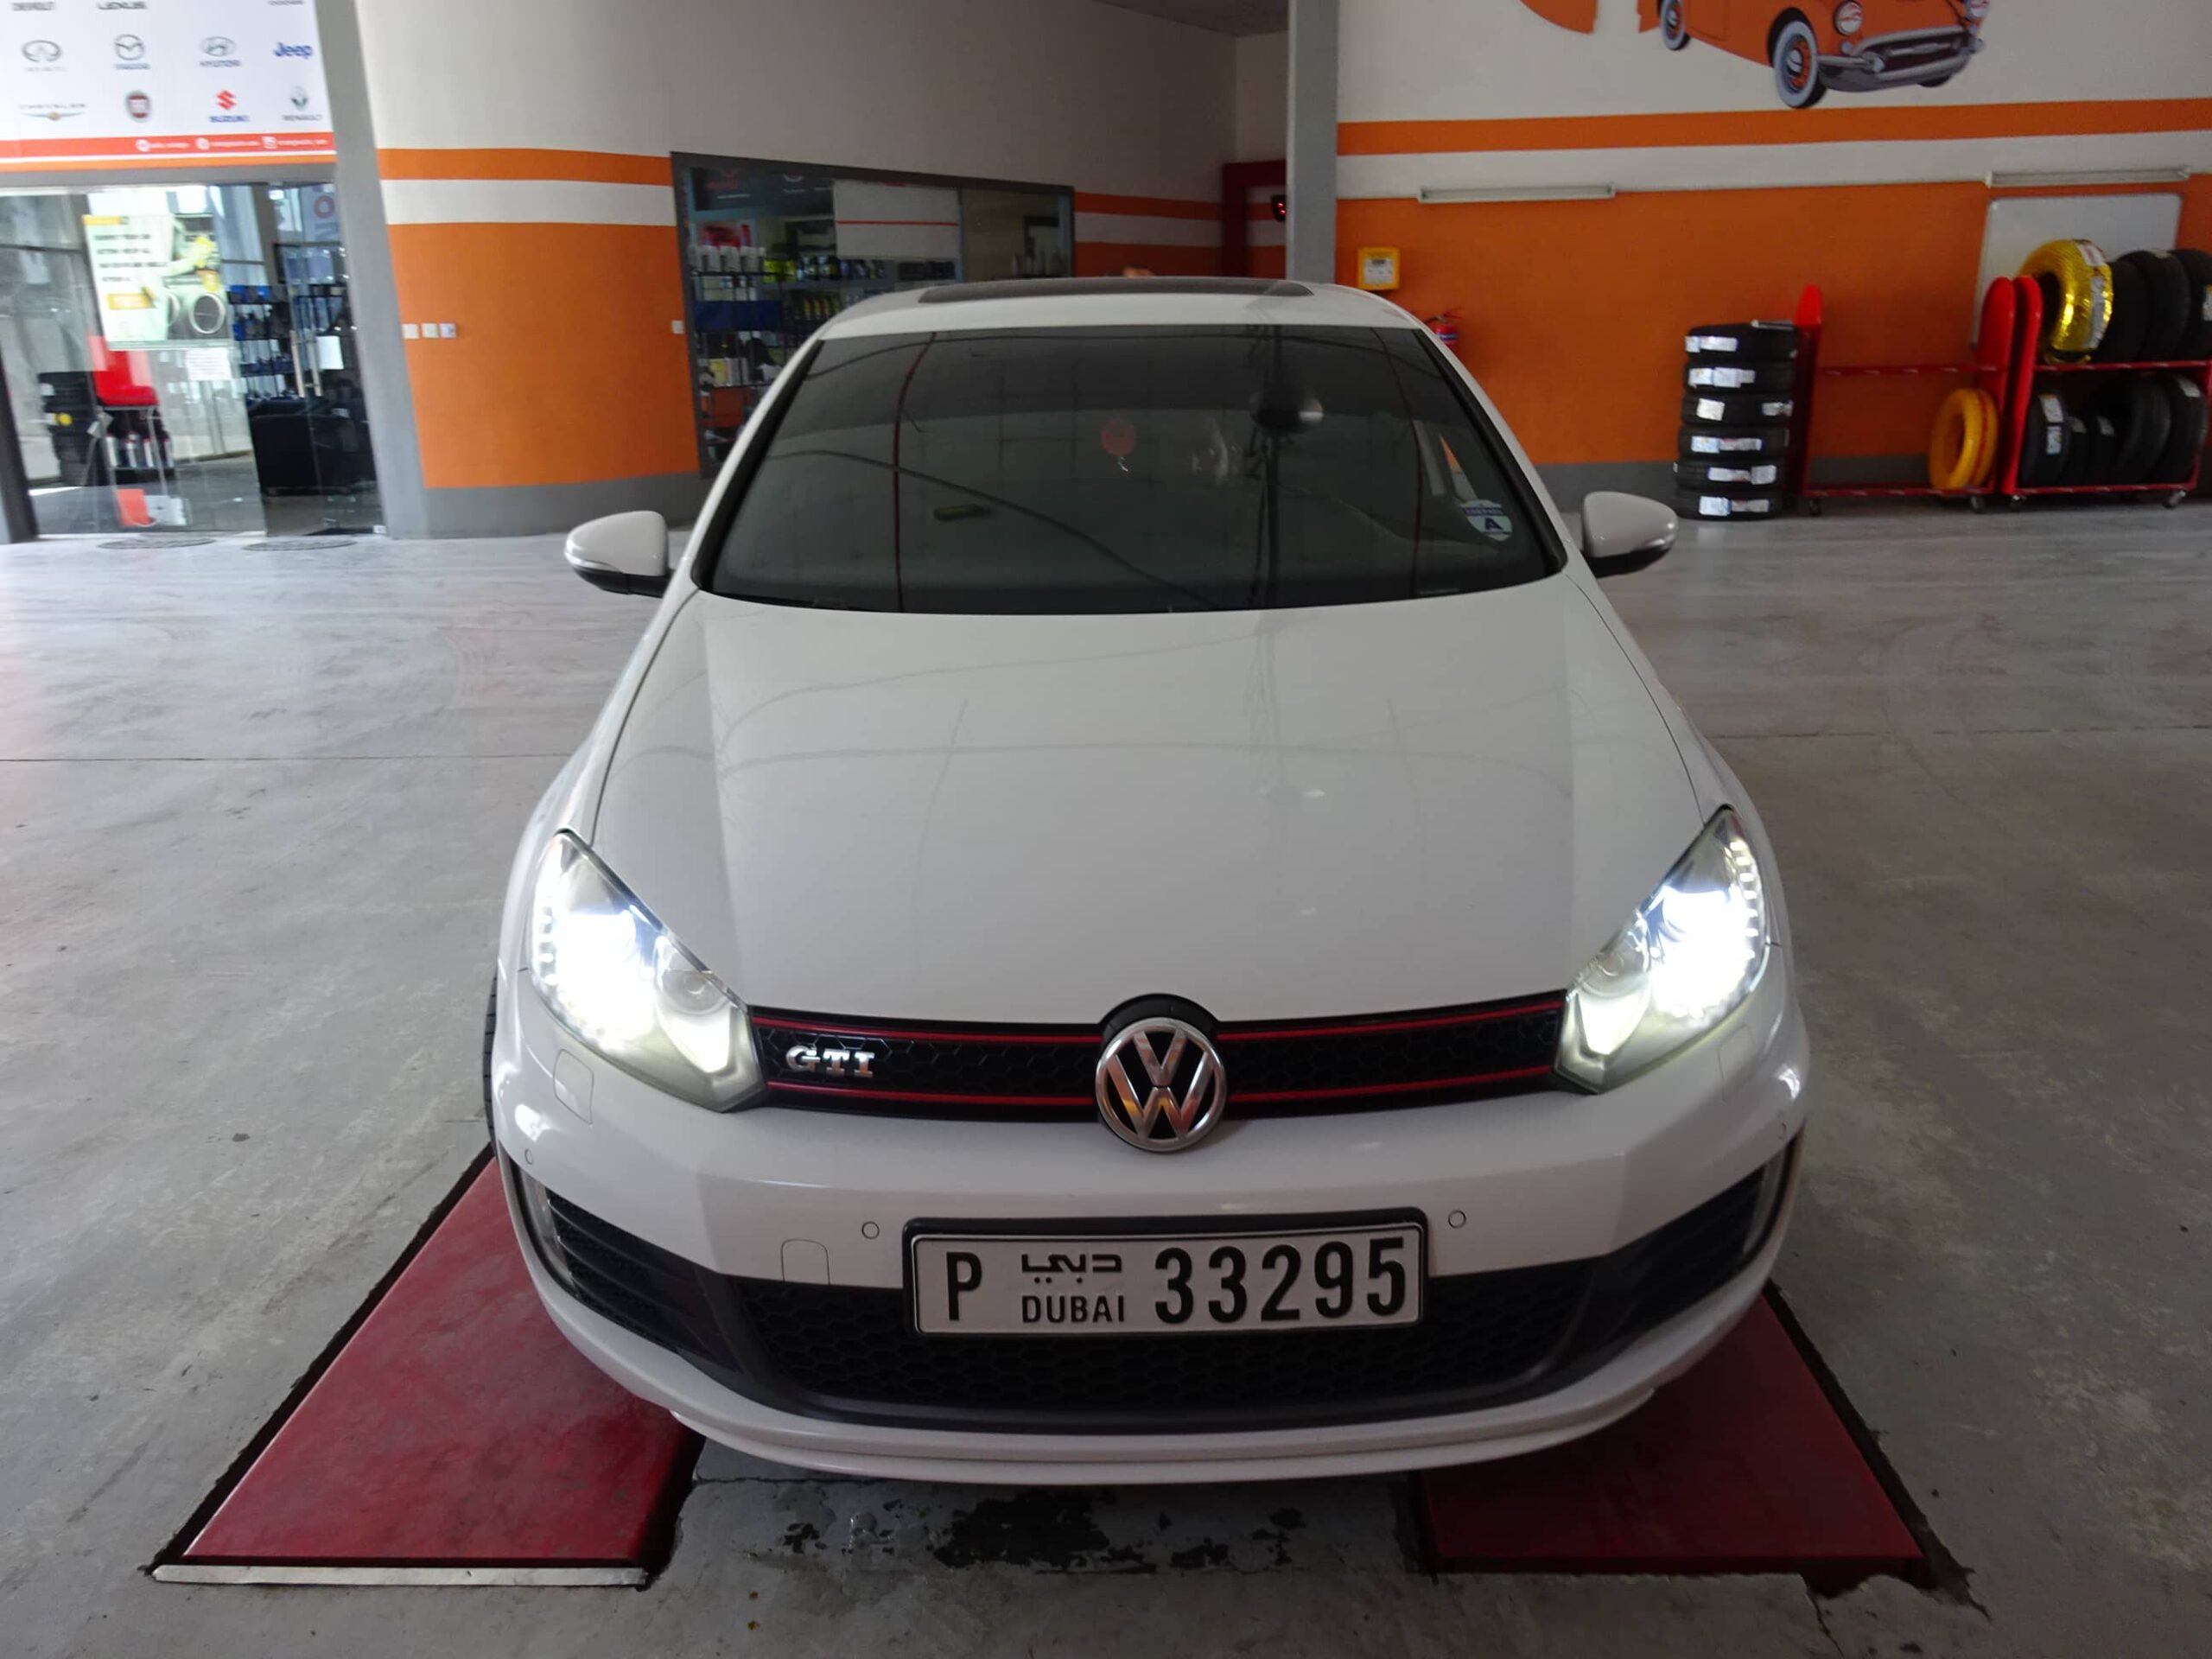 Volkswagen garage